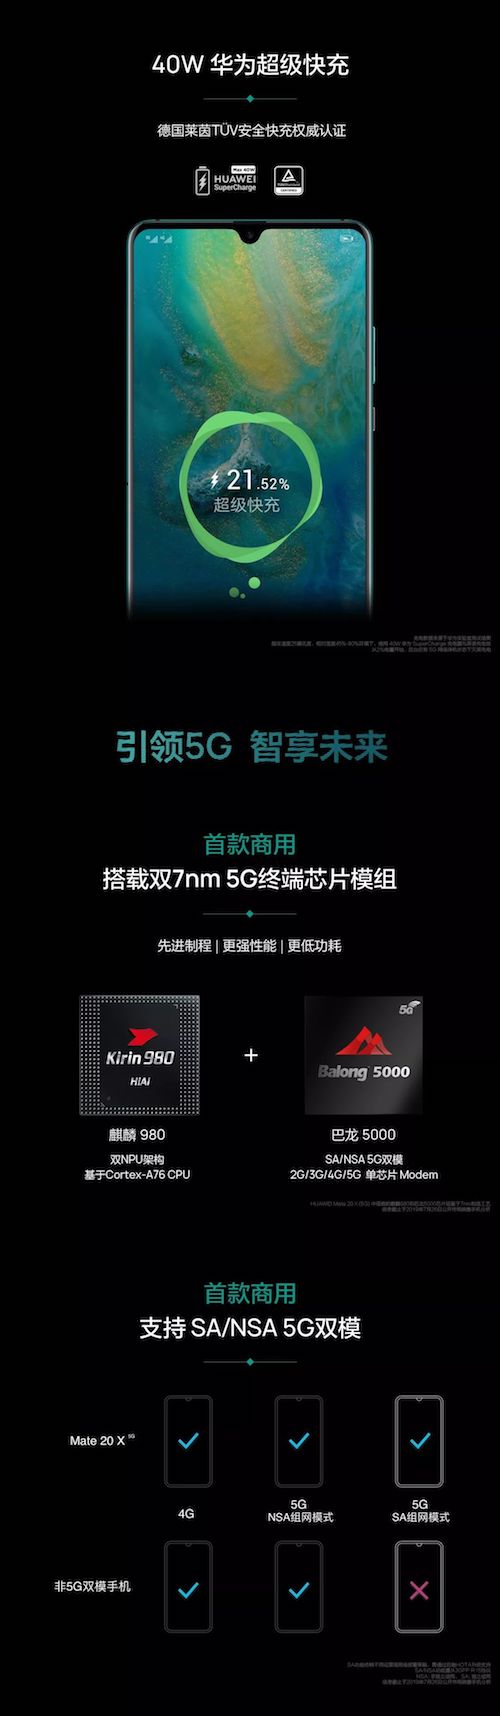 华为发布首款5G手机Mate 20 X：支持两种5G模式